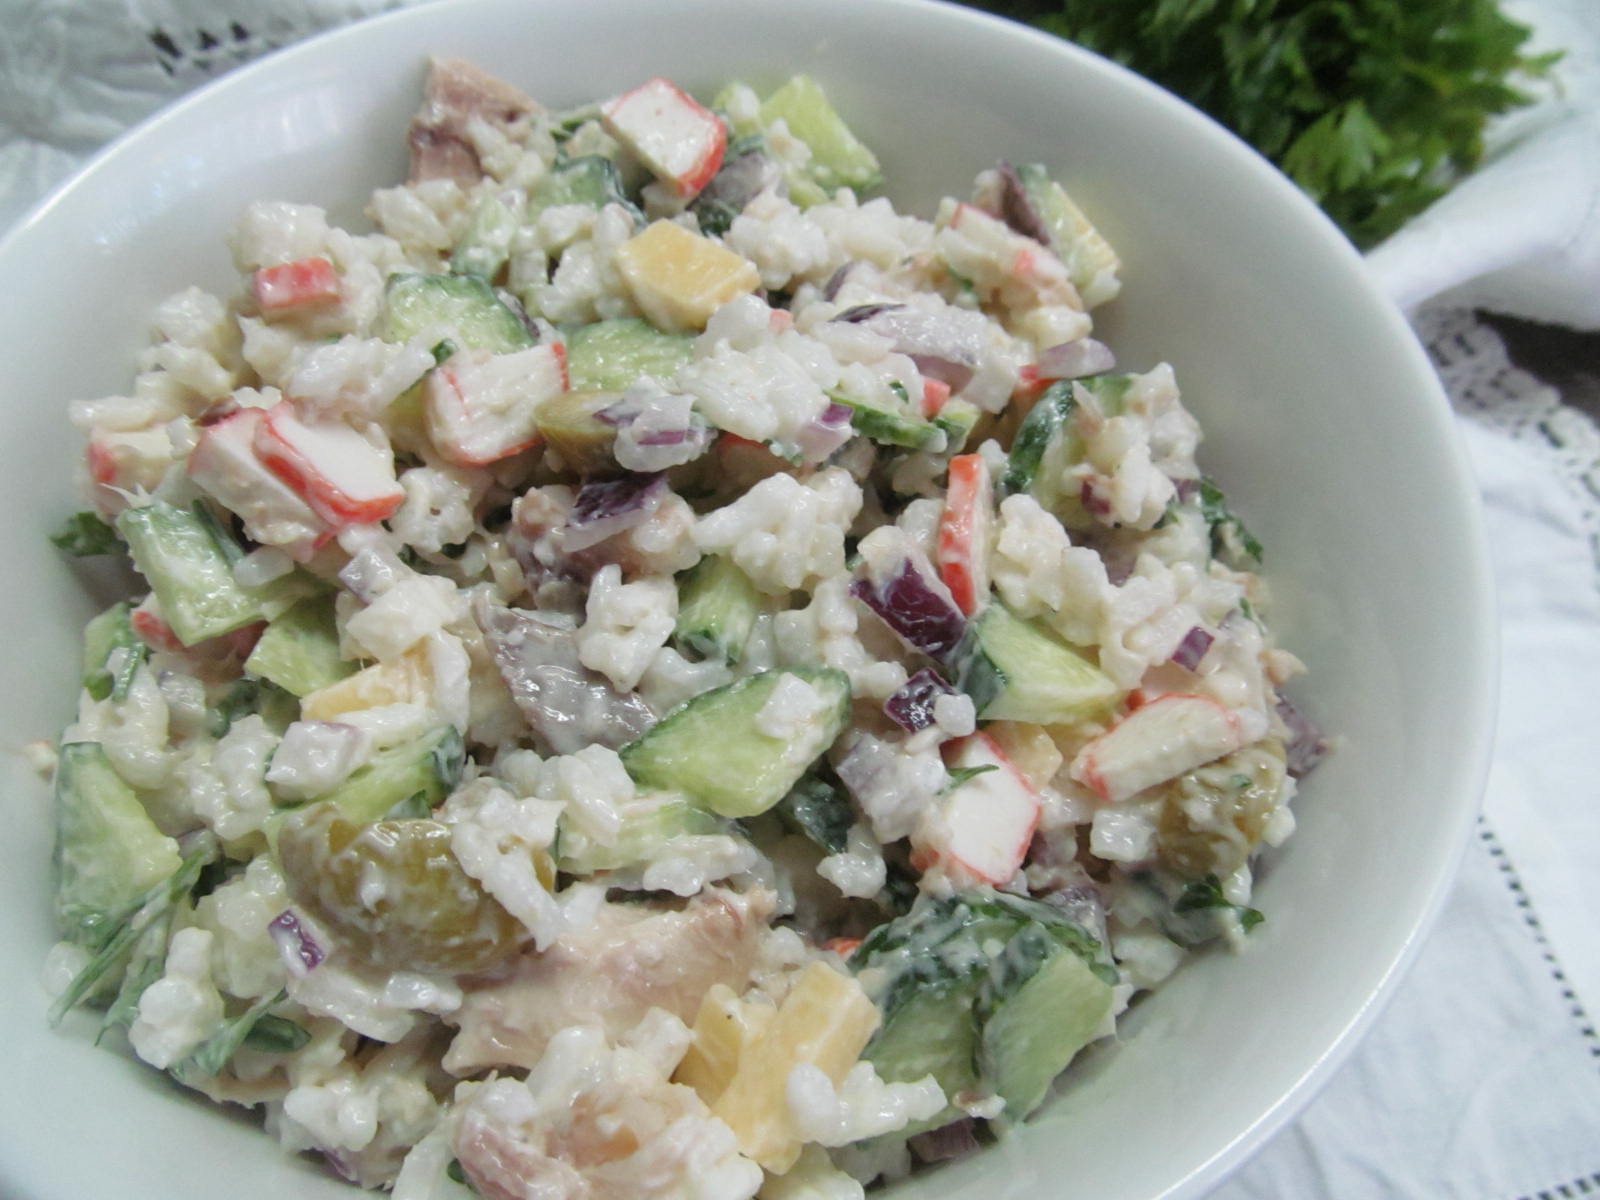 Вкусный салат с копченой рыбой и картофелем — приготовьте к обеду